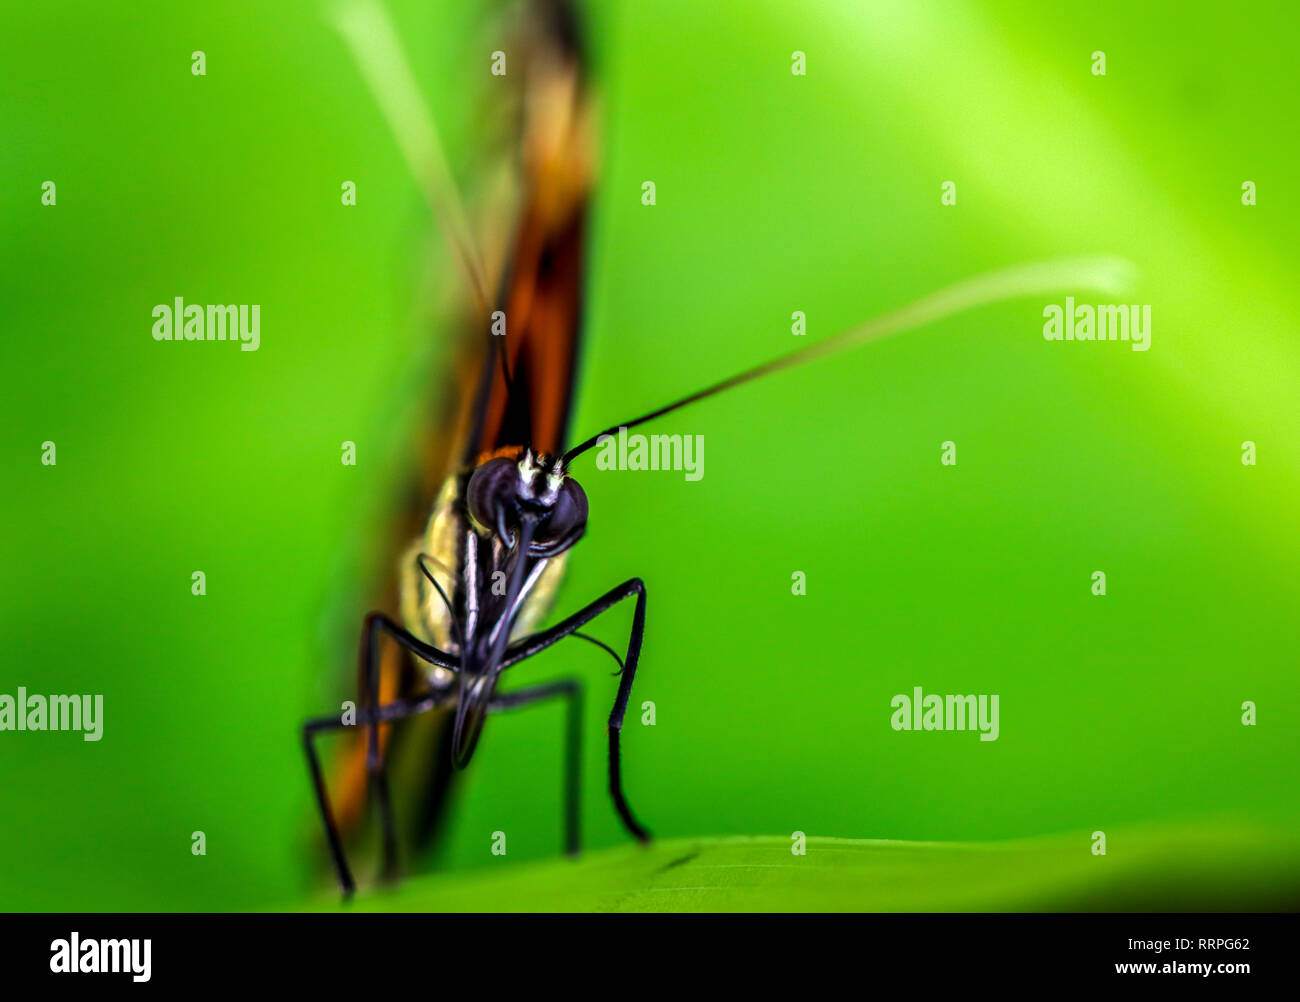 Tropic Schmetterling blickt voraus Verbindung Auge insekt Nahaufnahme mit grünem Hintergrund und kopieren Raum Stockfoto